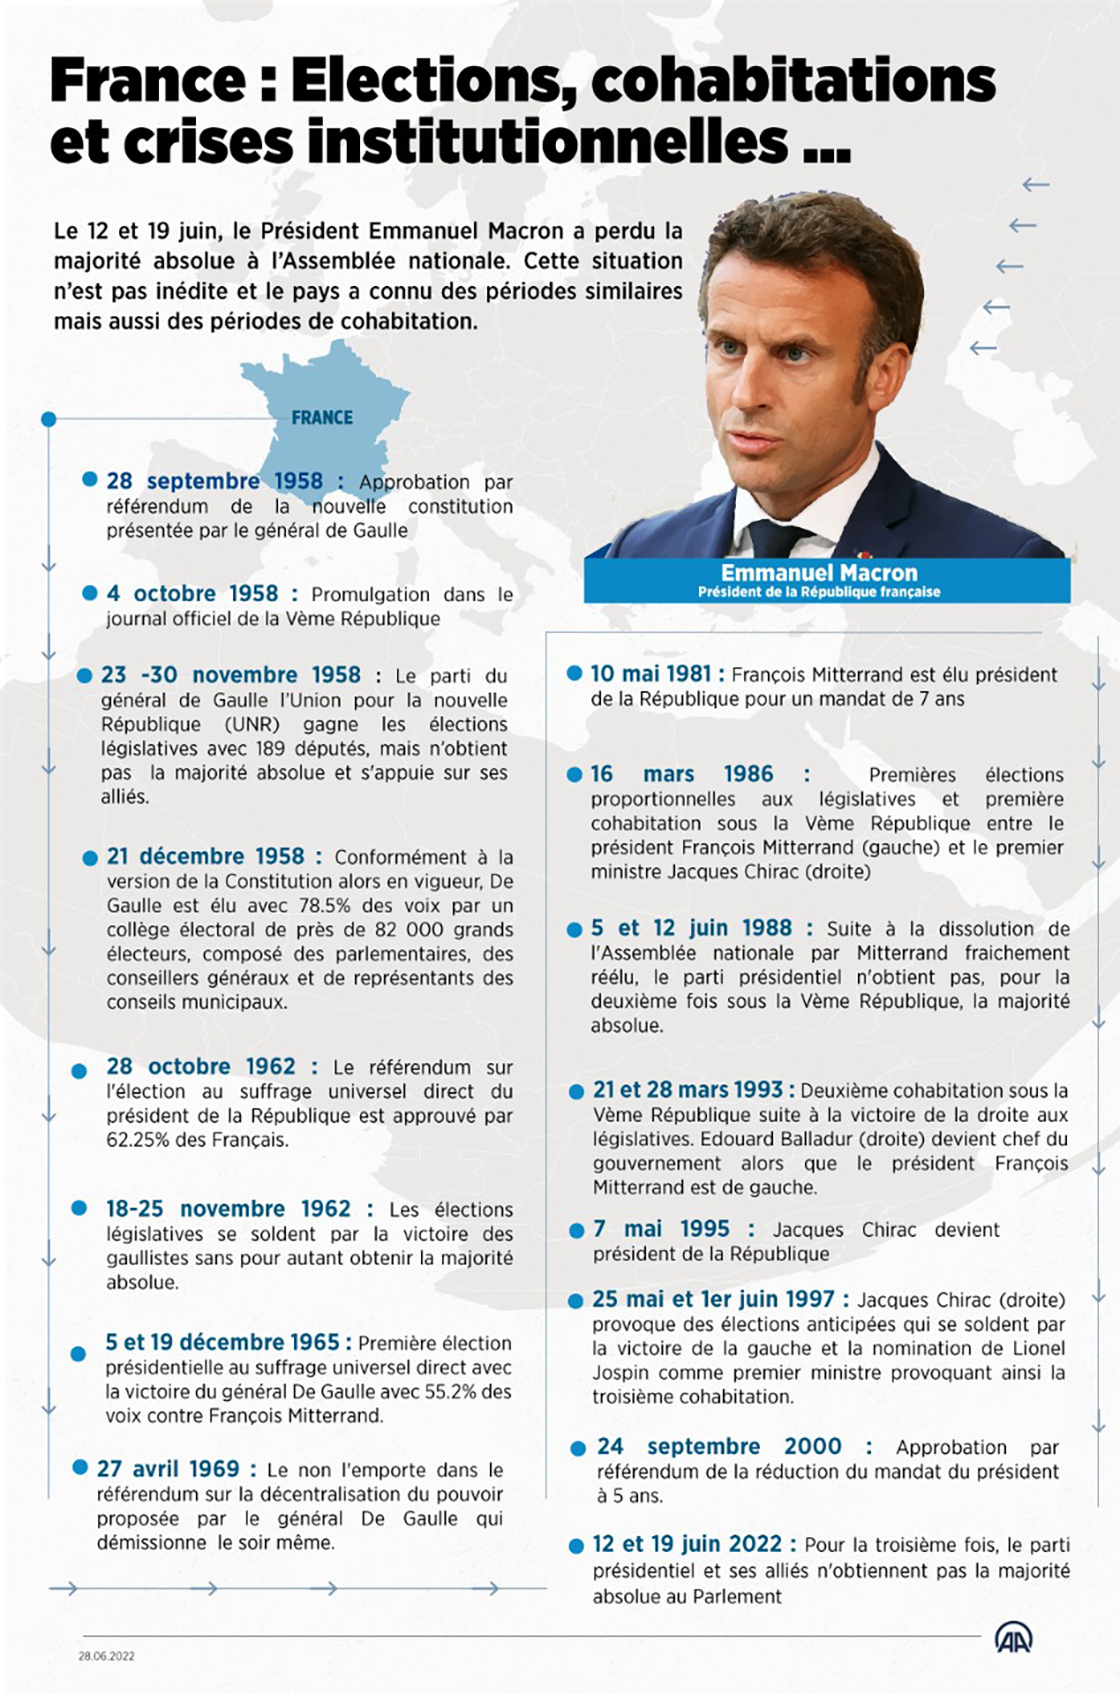 France : Malgré différentes réformes, les crises institutionnelles planent sur la vie politique 